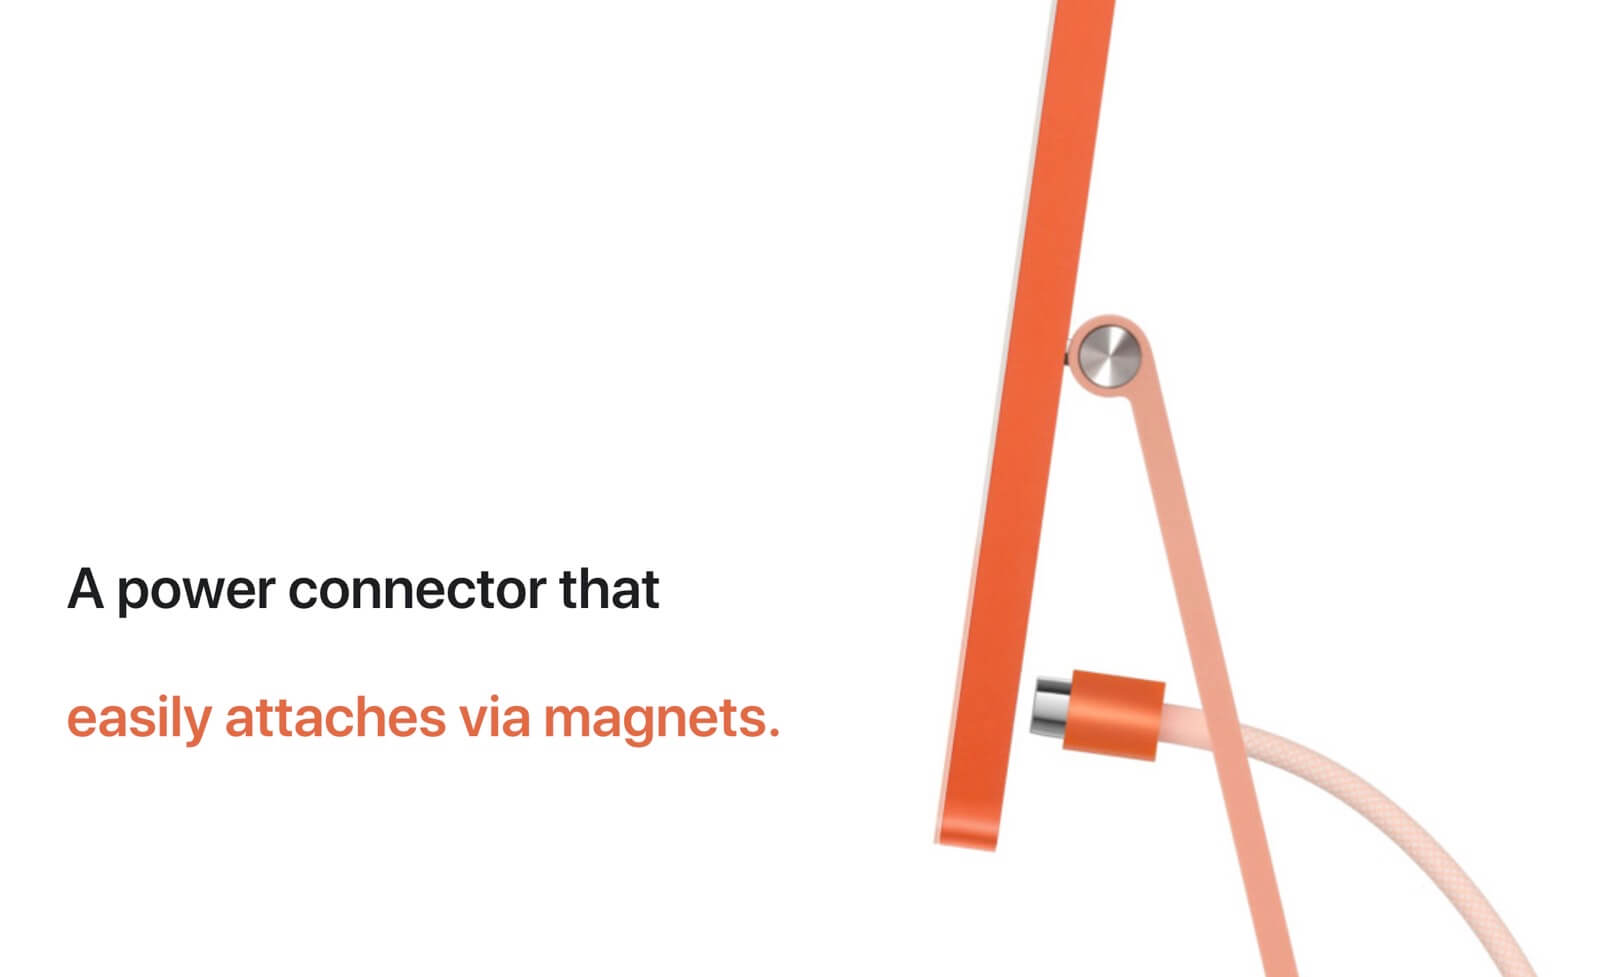 Новый iMac получил магнитный кабель питания: MagSafe возвращается?